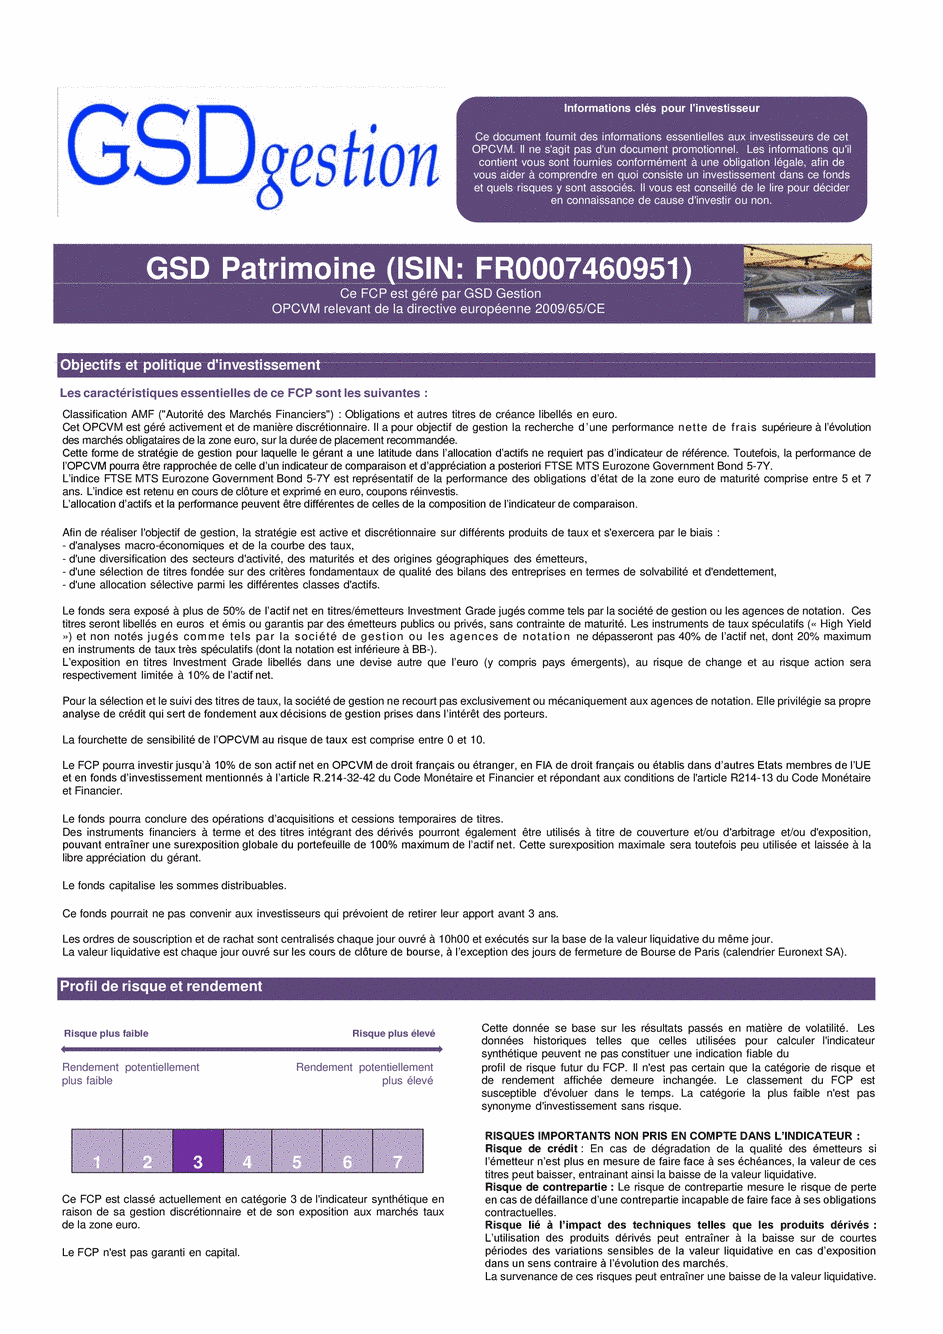 DICI-prospectus Complet GSD Patrimoine - 16/04/2021 - Français